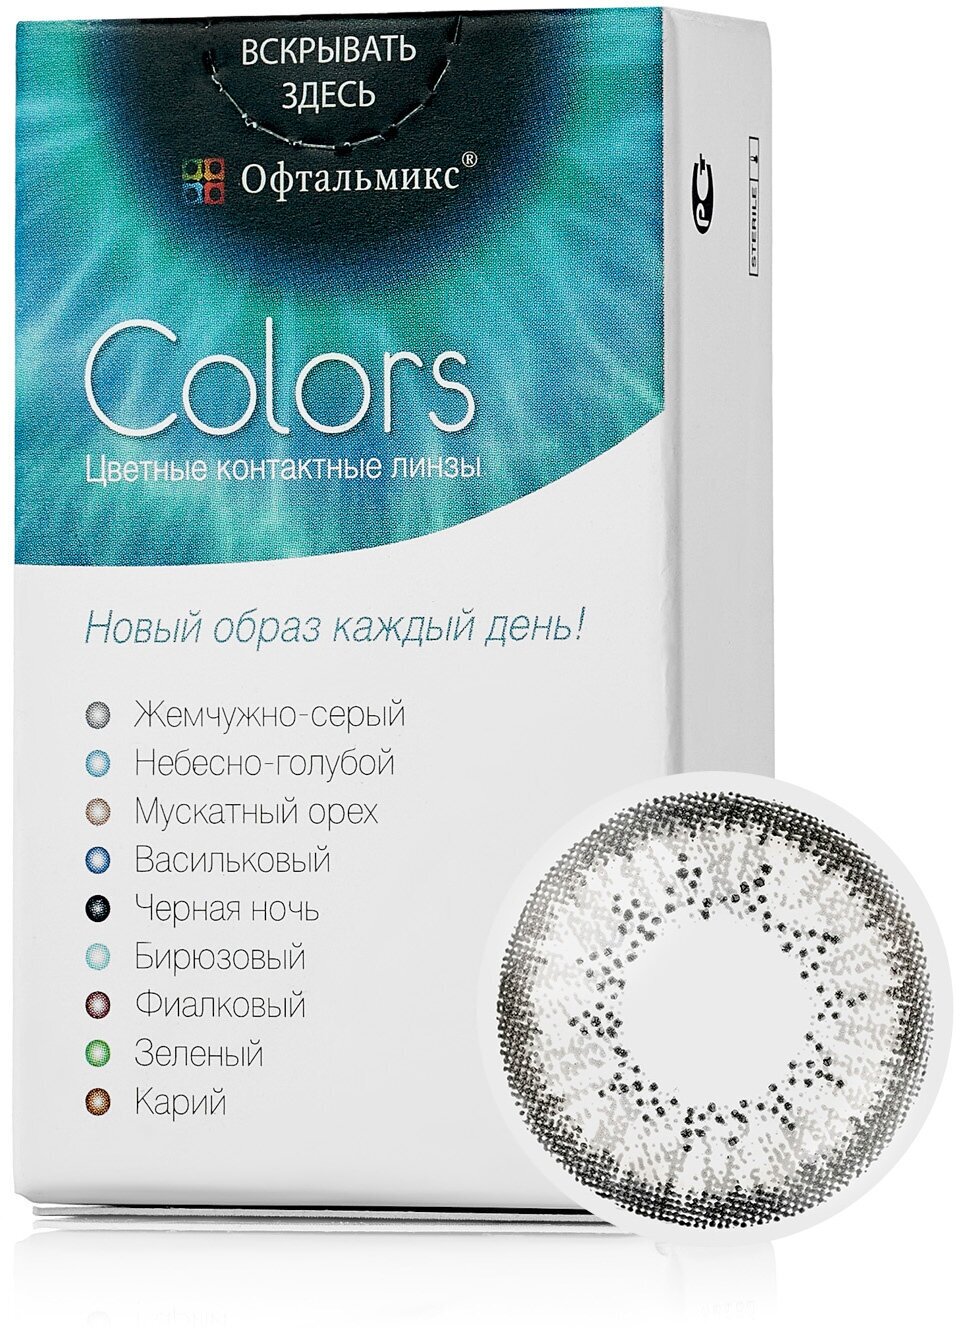 Цветные контактные линзы Офтальмикс Color Gray (жемчужно-серый) R8.6 -8.5D (2шт.)